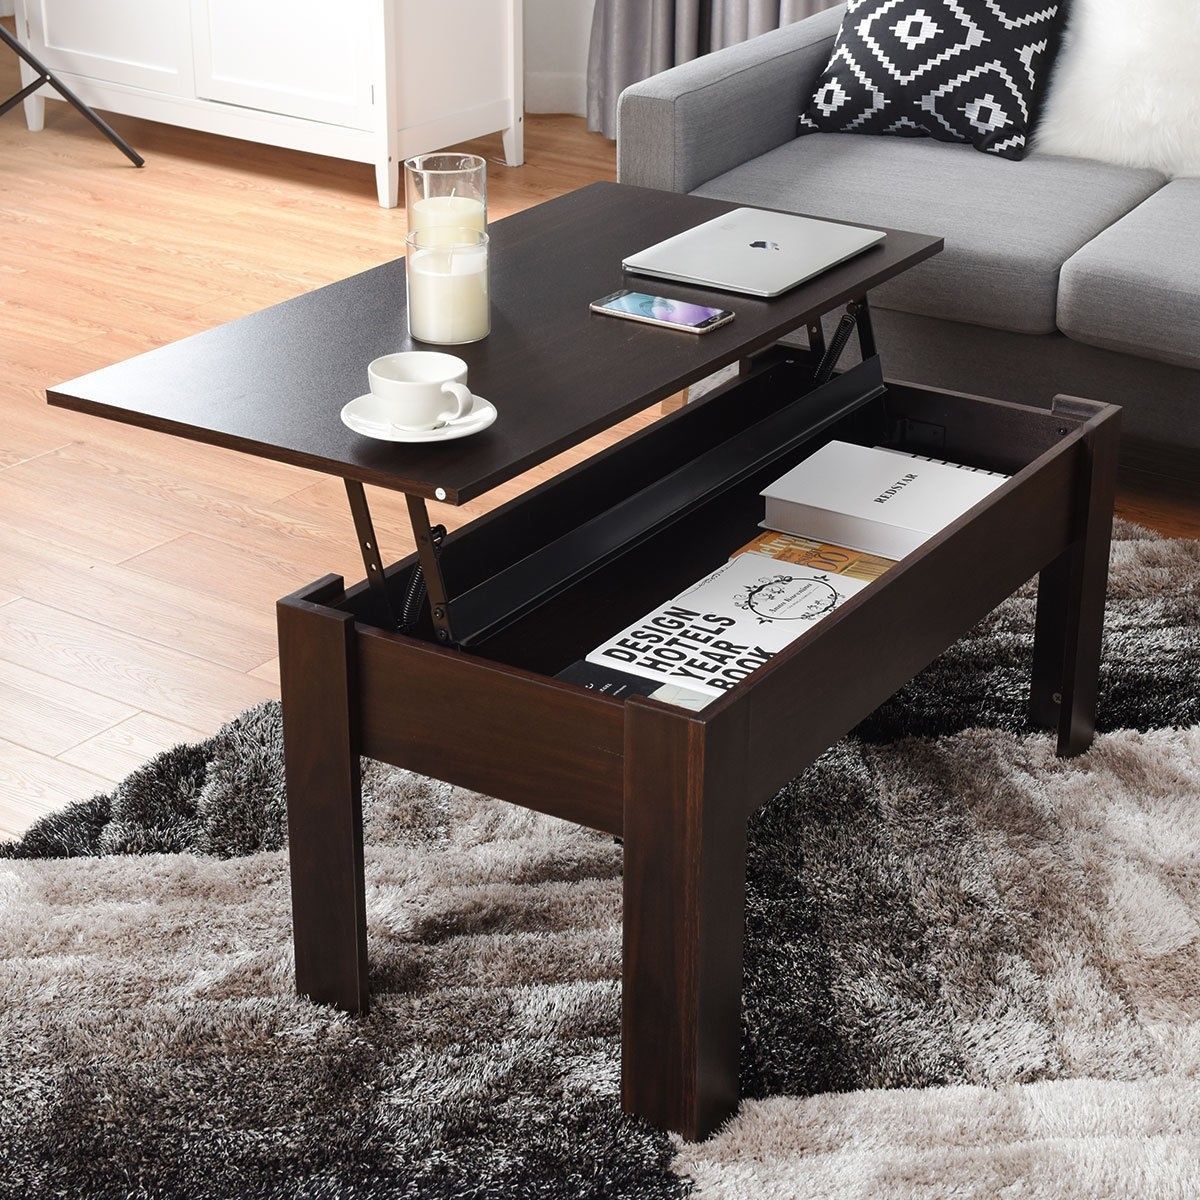 Modern Furniture Hidden Compartment Lift Tabletop Coffee Table | Coffee Regarding Lift Top Coffee Tables With Hidden Storage Compartments (View 19 of 20)